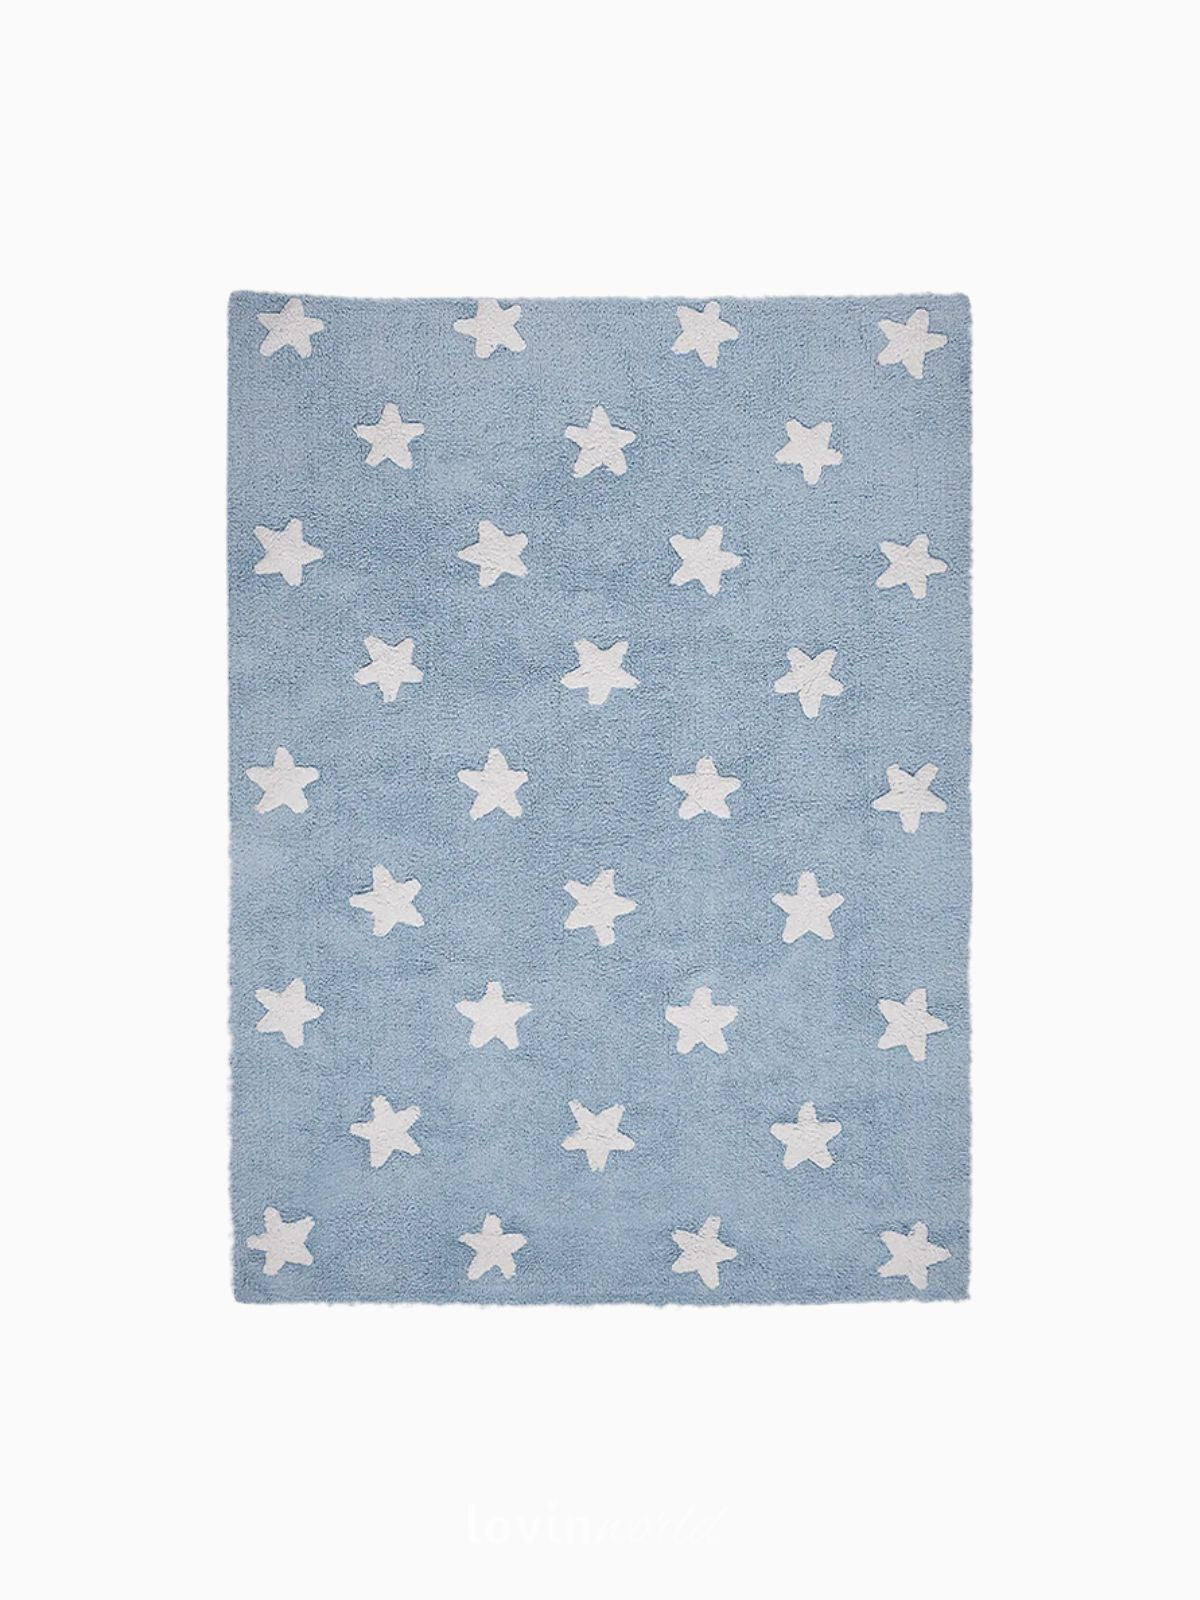 Tappeto lavabile per bambini Stars in colore blu 120x160 cm.-1